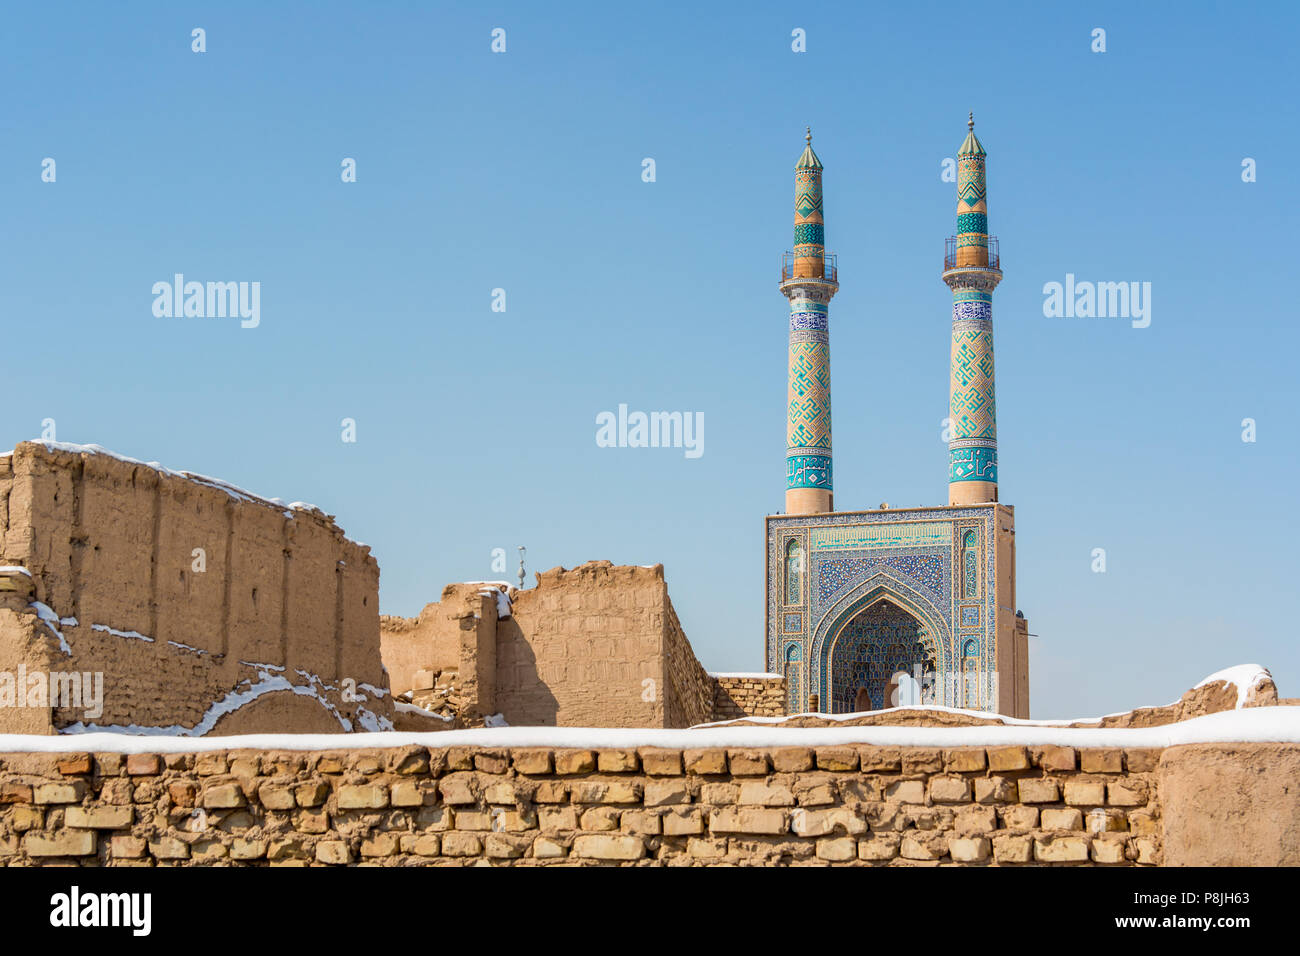 James mosquée de Yazd, Iran. Un parfait exemple de l'architecture perse style Azari et a le plus haut des minarets en Iran. Banque D'Images